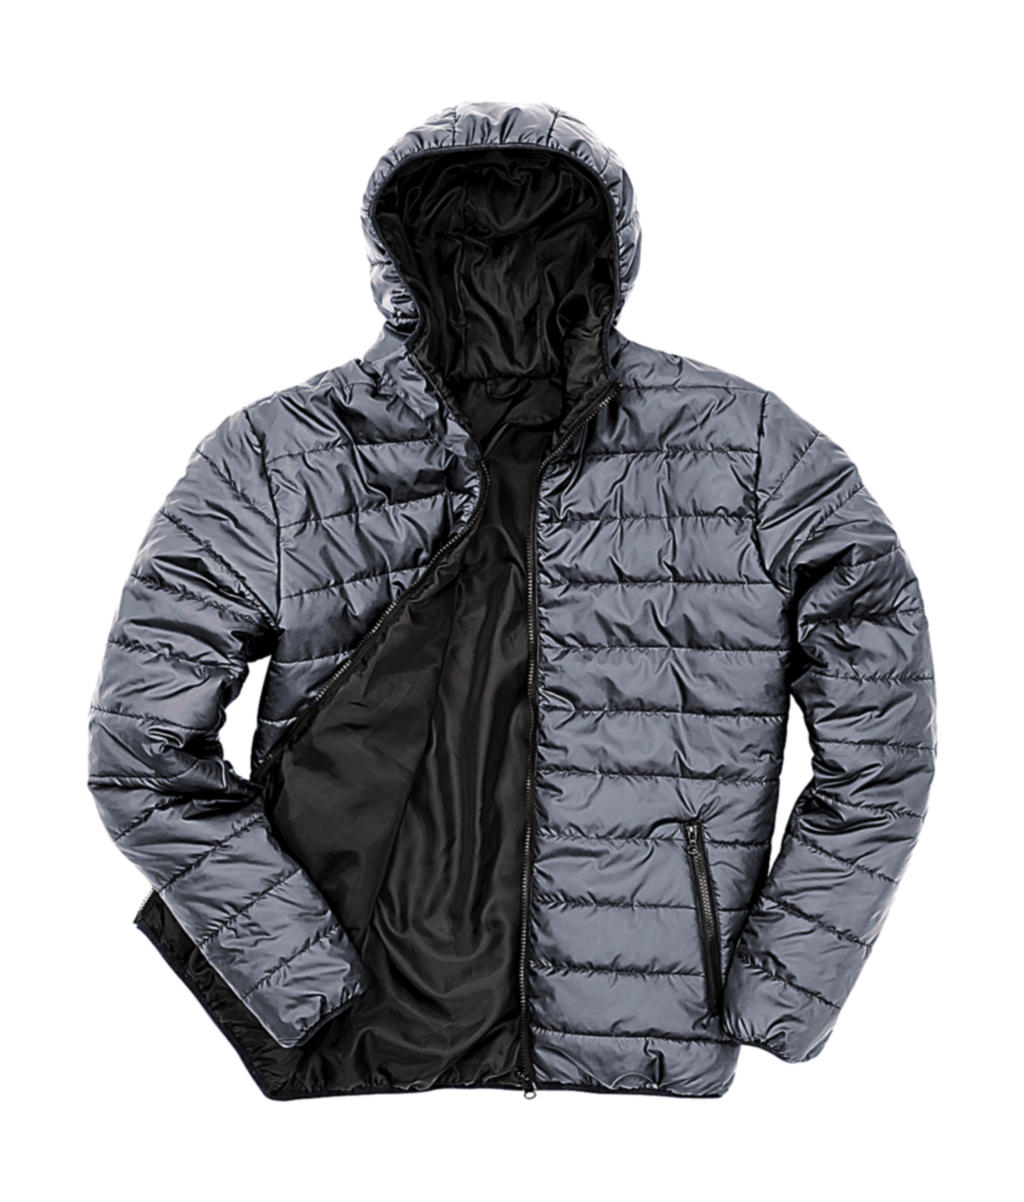 Pánská polstrovaná bunda Result s kapucí Velikost: S, Barva: Frost Grey/Black